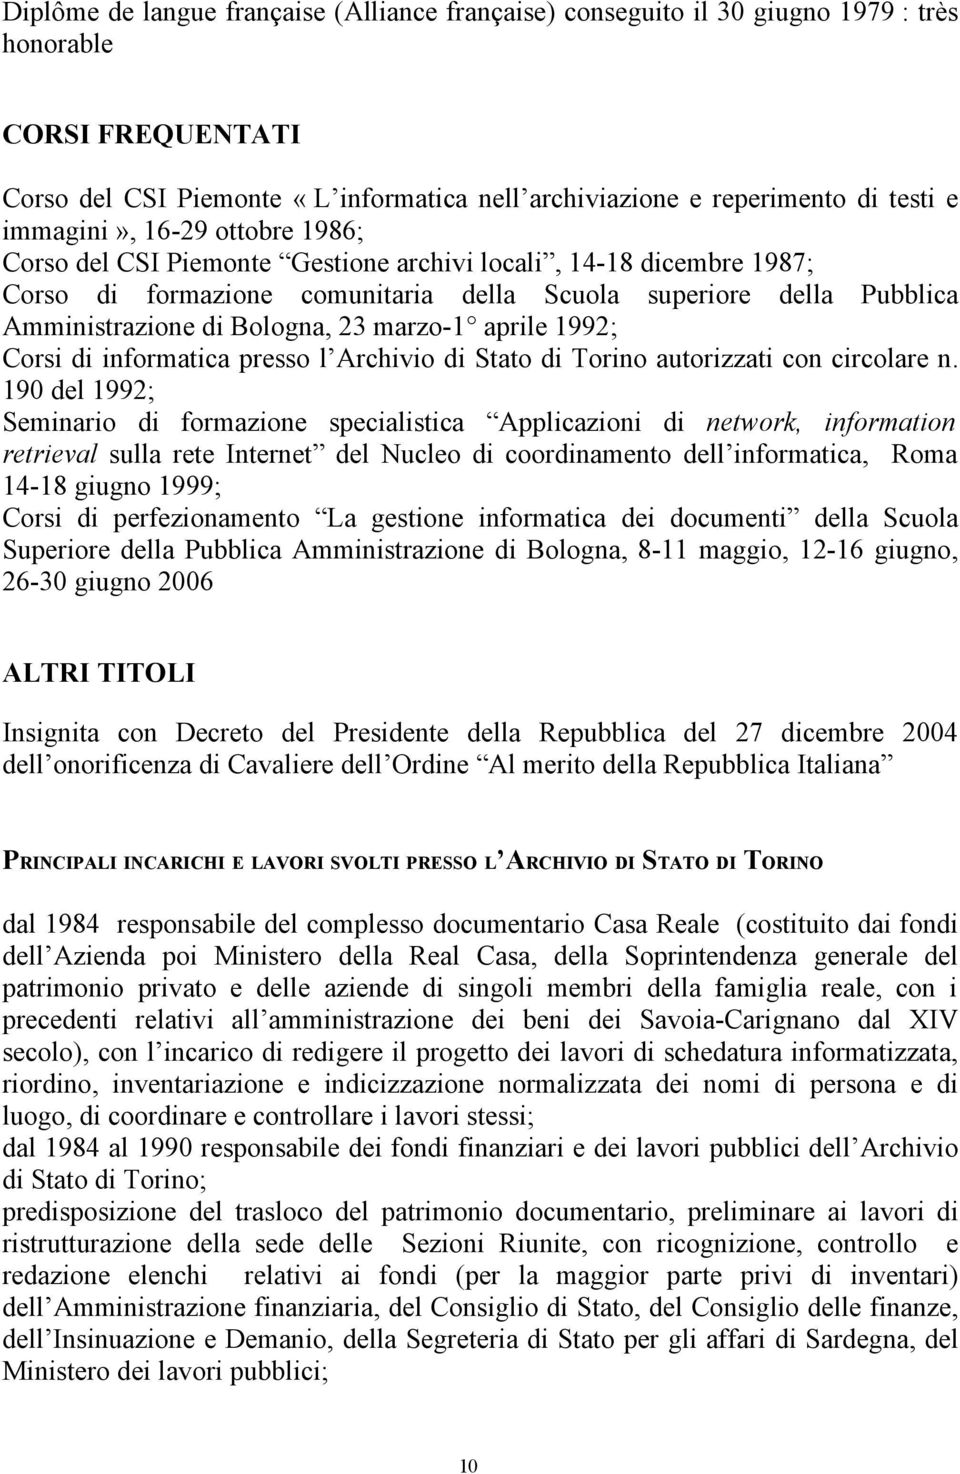 23 marzo-1 aprile 1992; Corsi di informatica presso l Archivio di Stato di Torino autorizzati con circolare n.